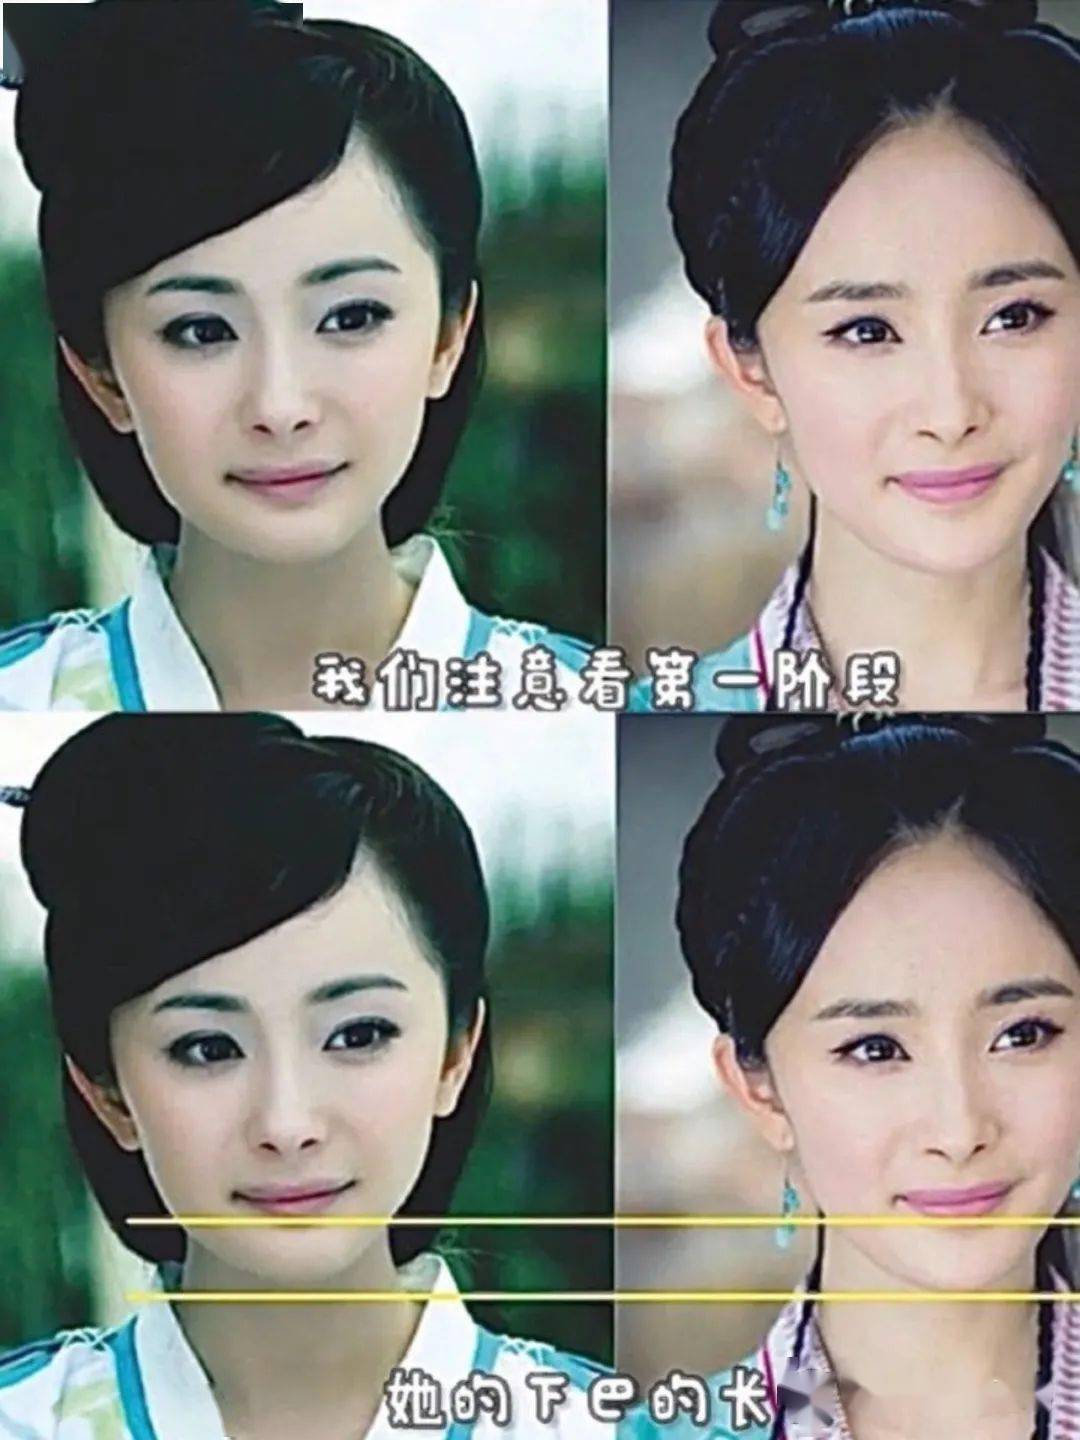 早期脸型 早期的杨幂被称为"嫩牛五方",这是因为当时的她下巴和她